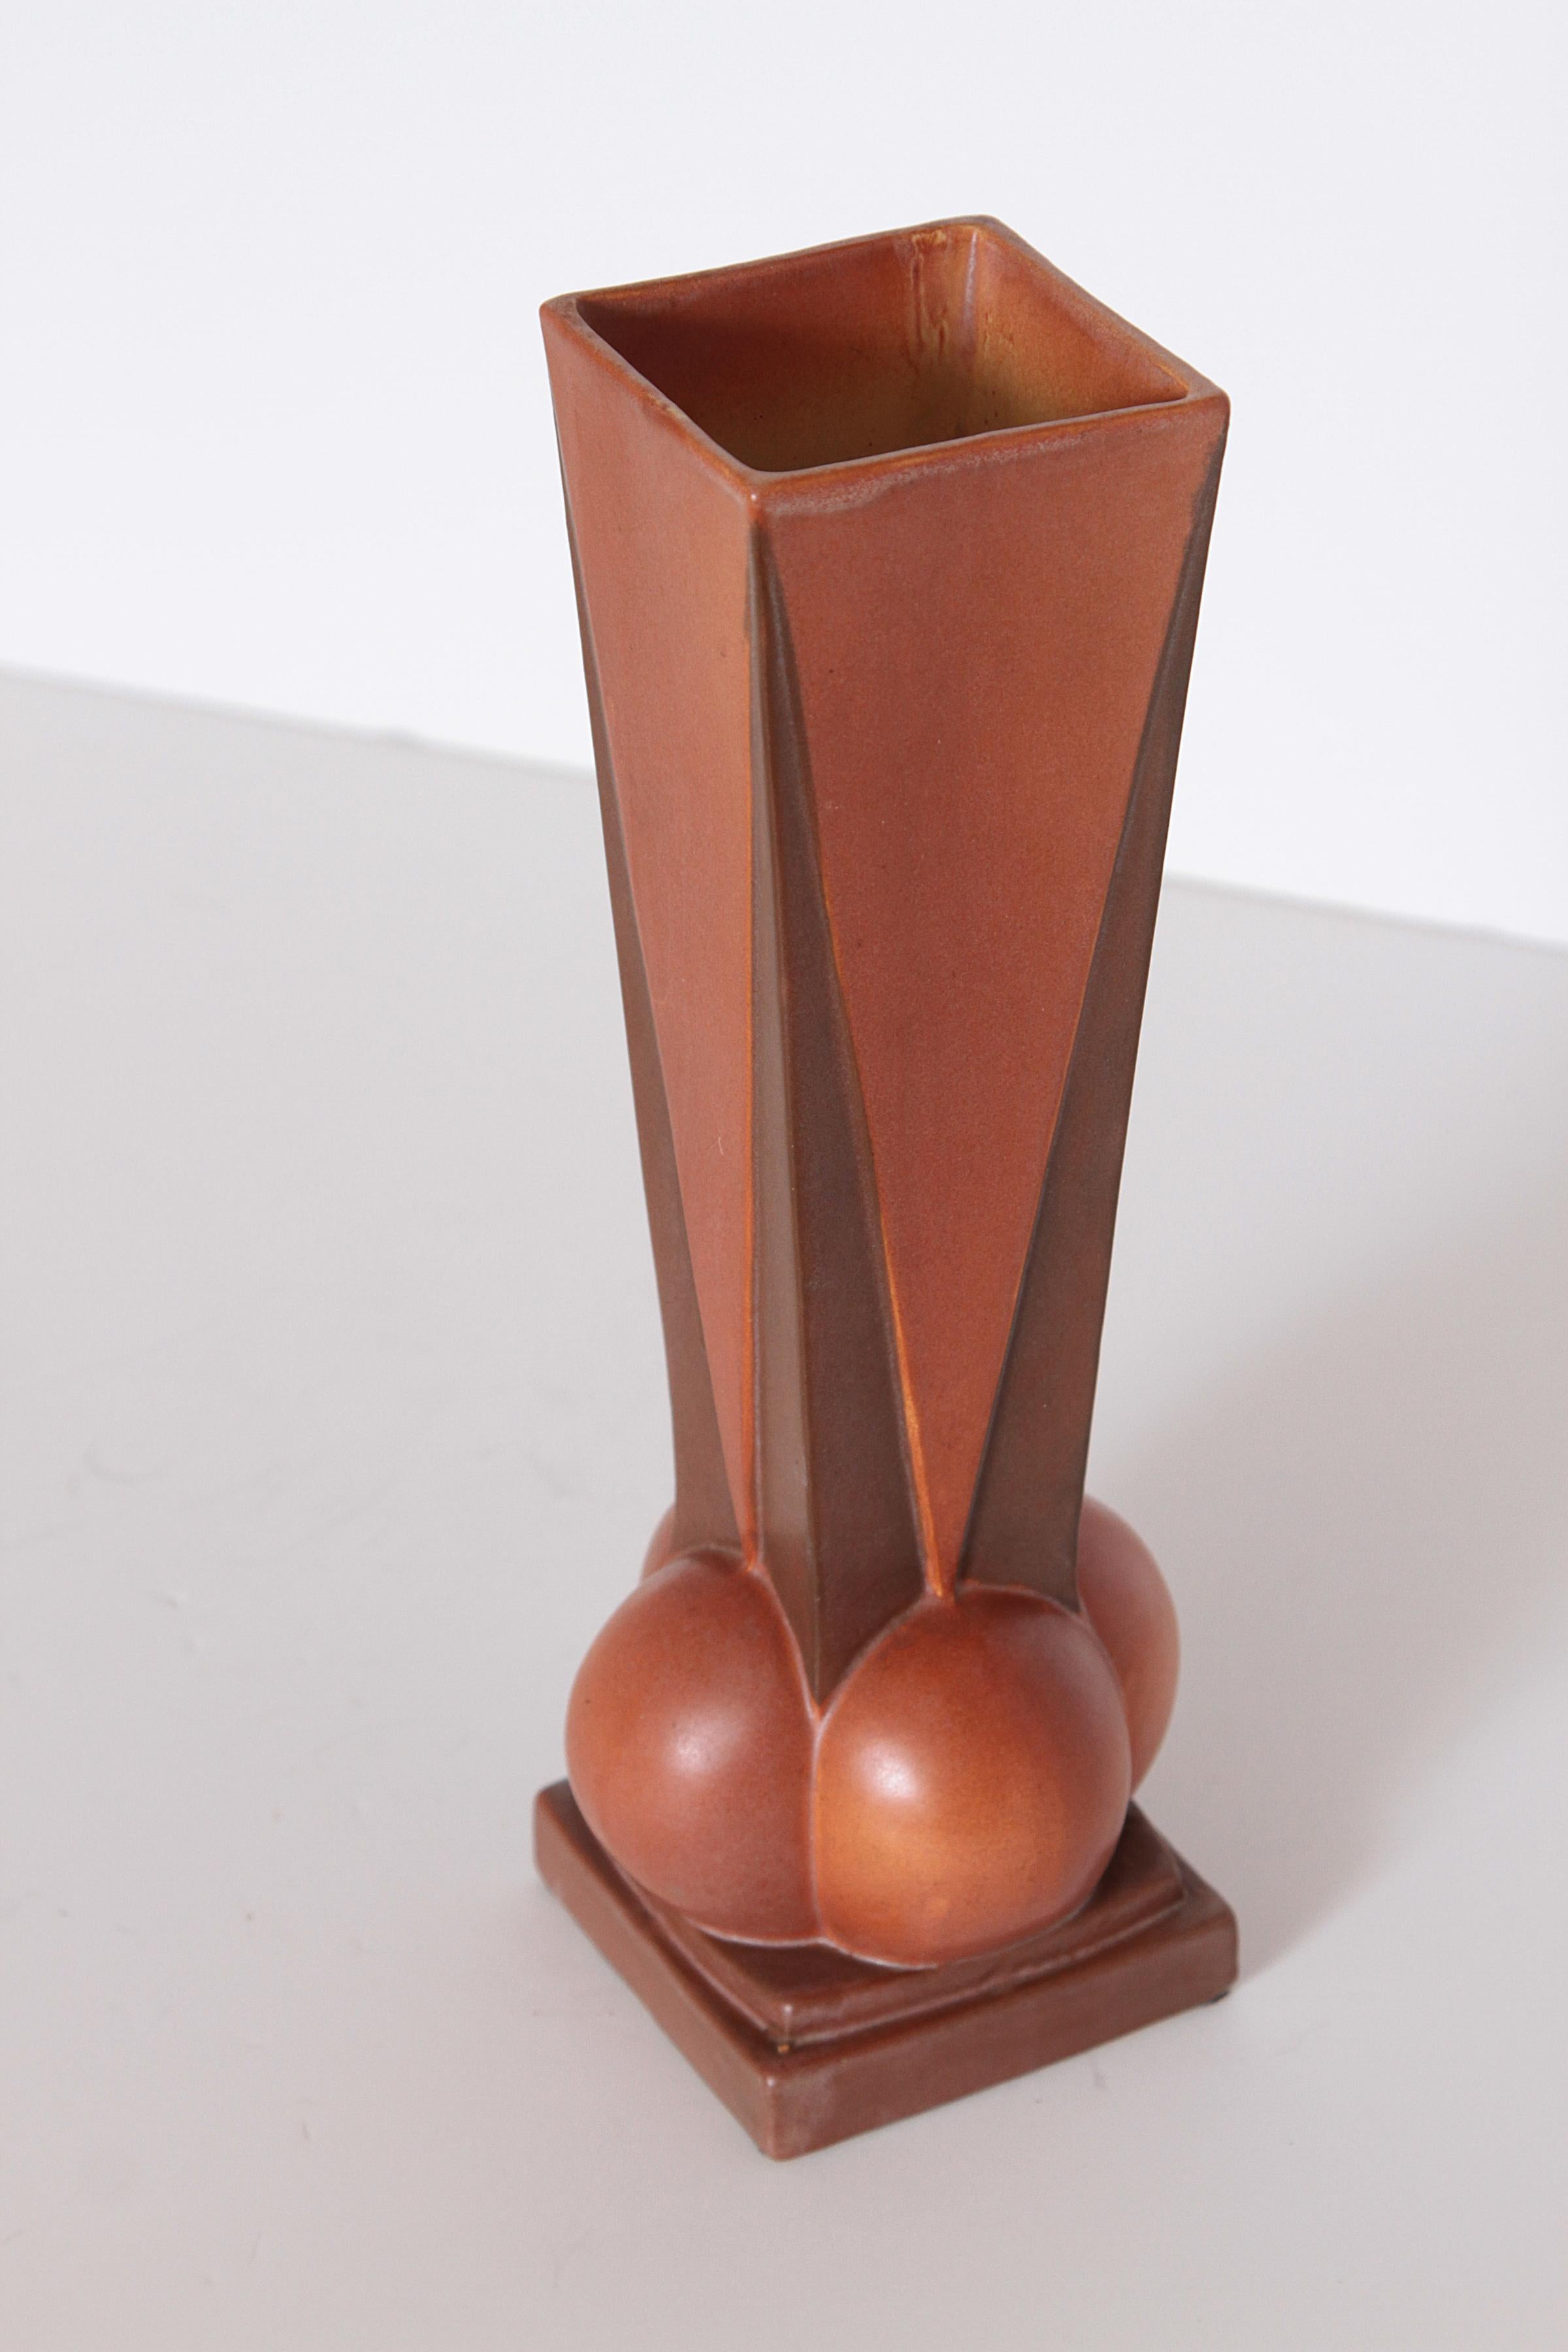 Art Deco Roseville Futura Four-Ball Ceramic Vase by Frank Ferrell   For Sale 2